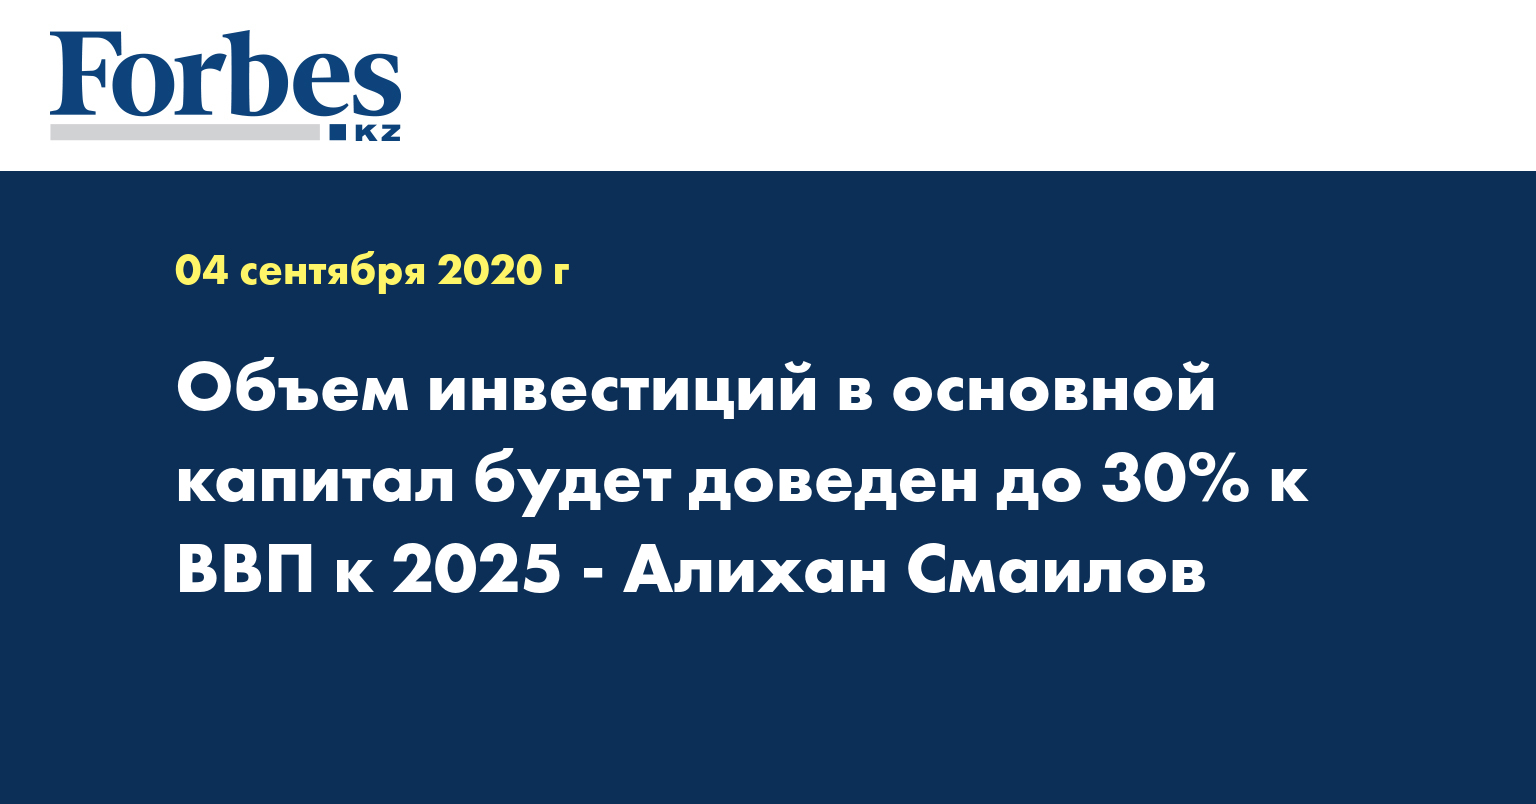 Объем инвестиций в основной капитал будет доведен до 30% к ВВП к 2025 - Алихан Смаилов